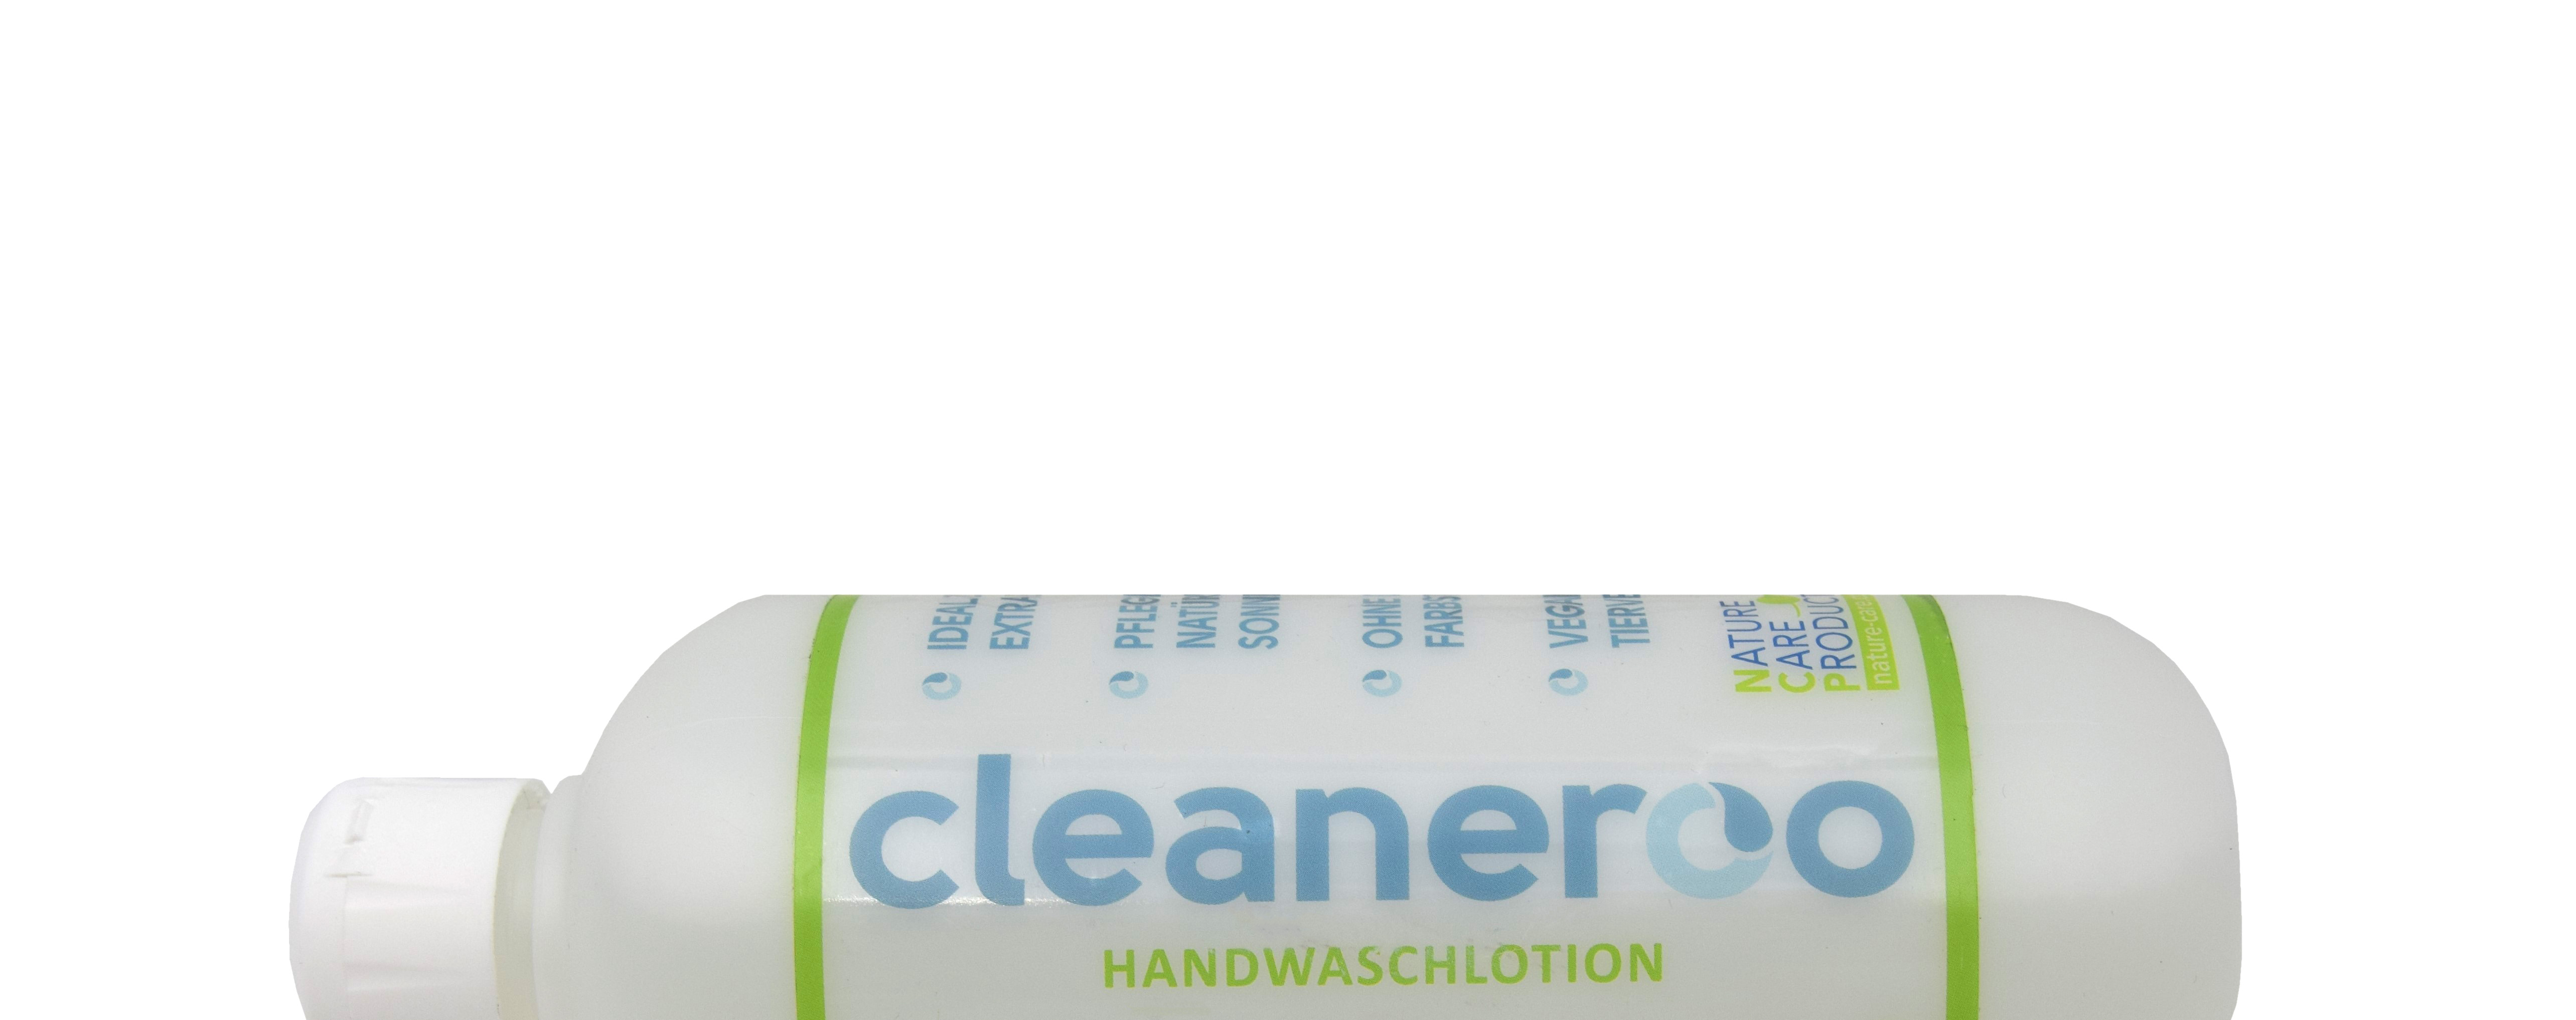 cleaneroo Handwaschlotion (grün)